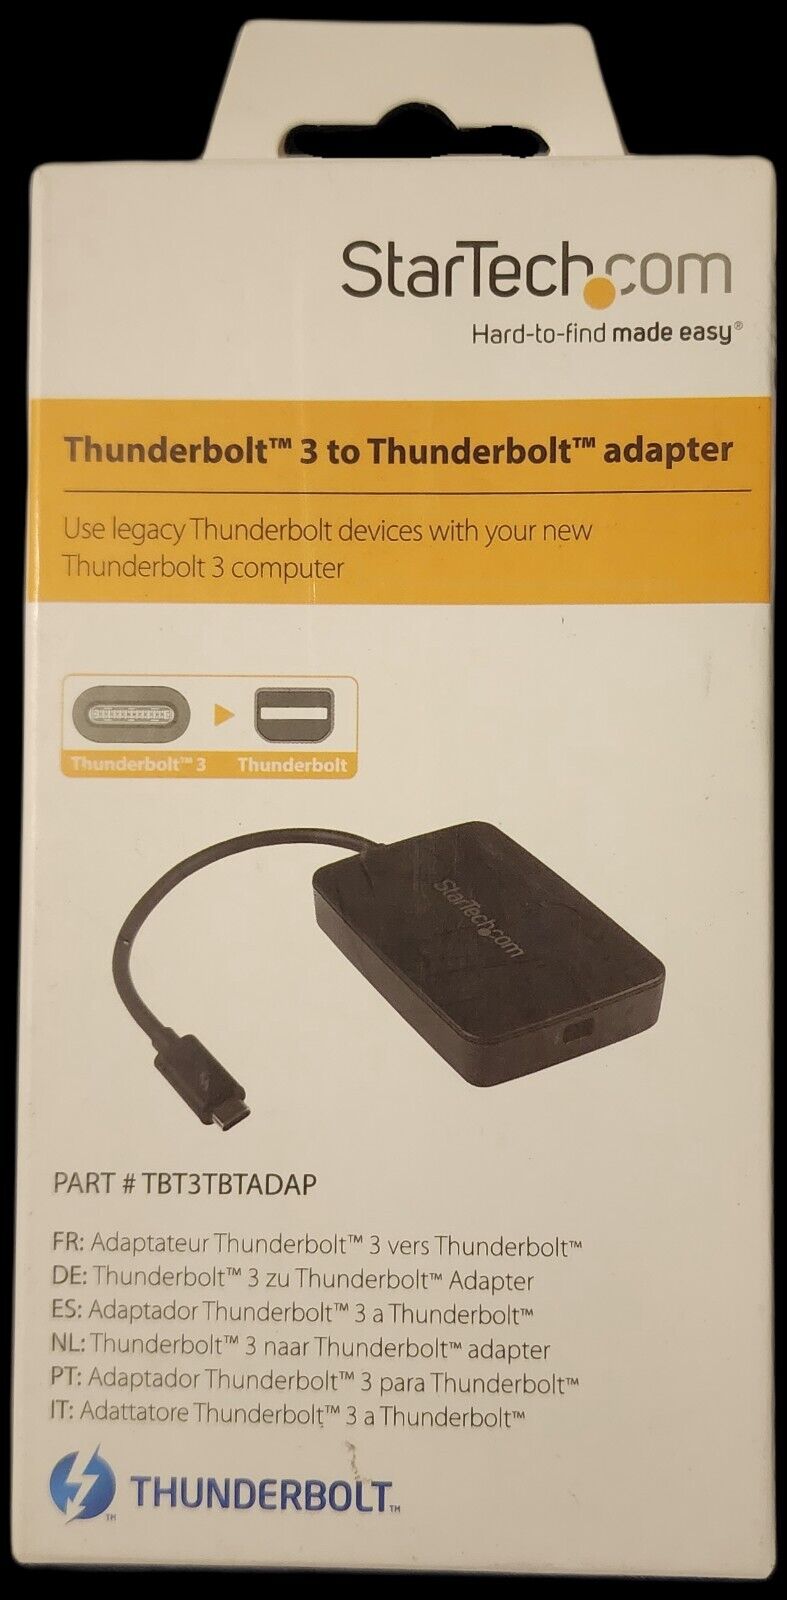 Brand New StarTech.com Thunderbolt 3 Adapter Star Tech TBT3TBTADAP